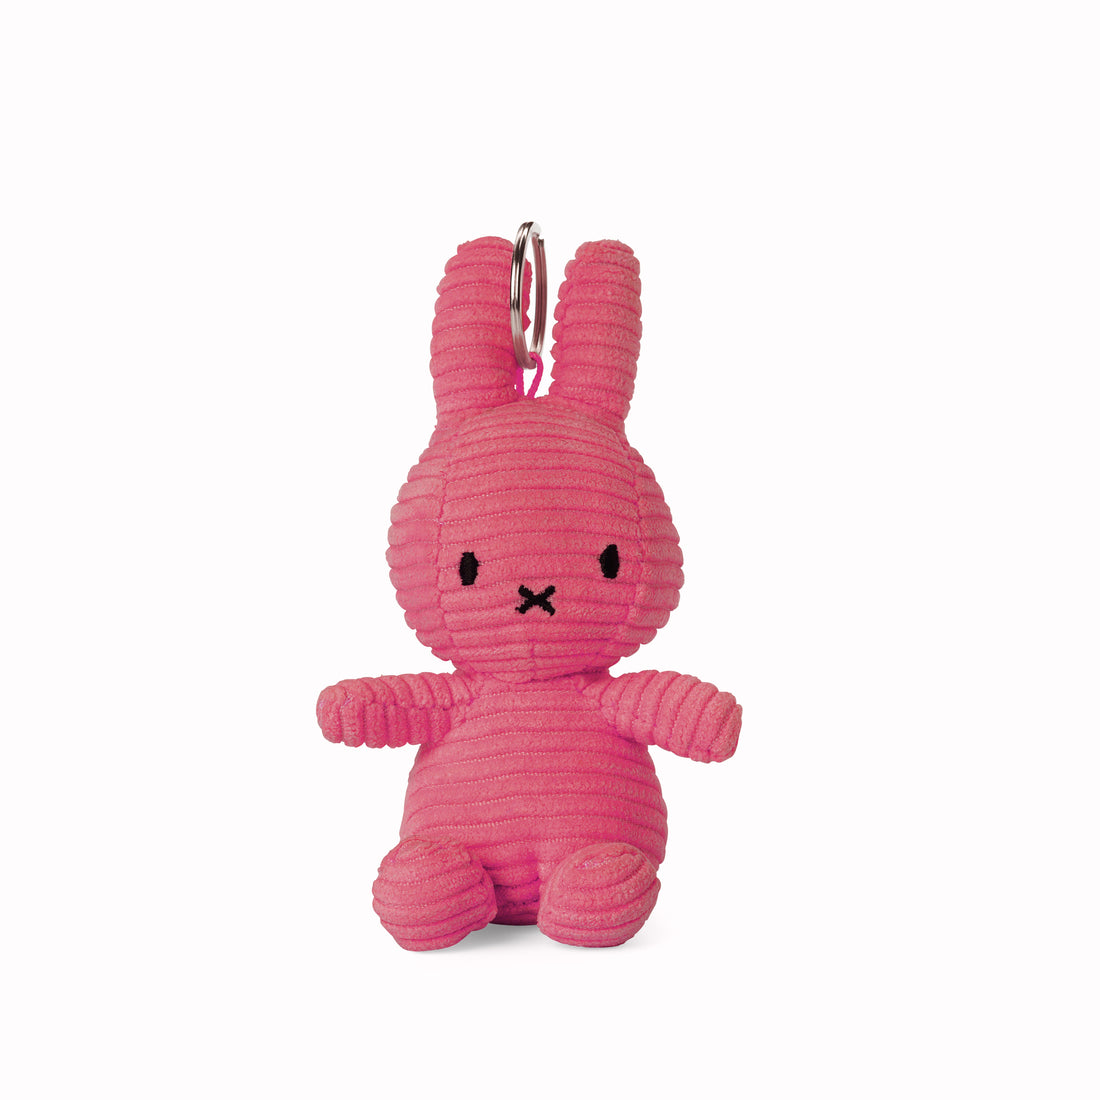 miffy-keychain-corduroy-bubblegum-pink-1